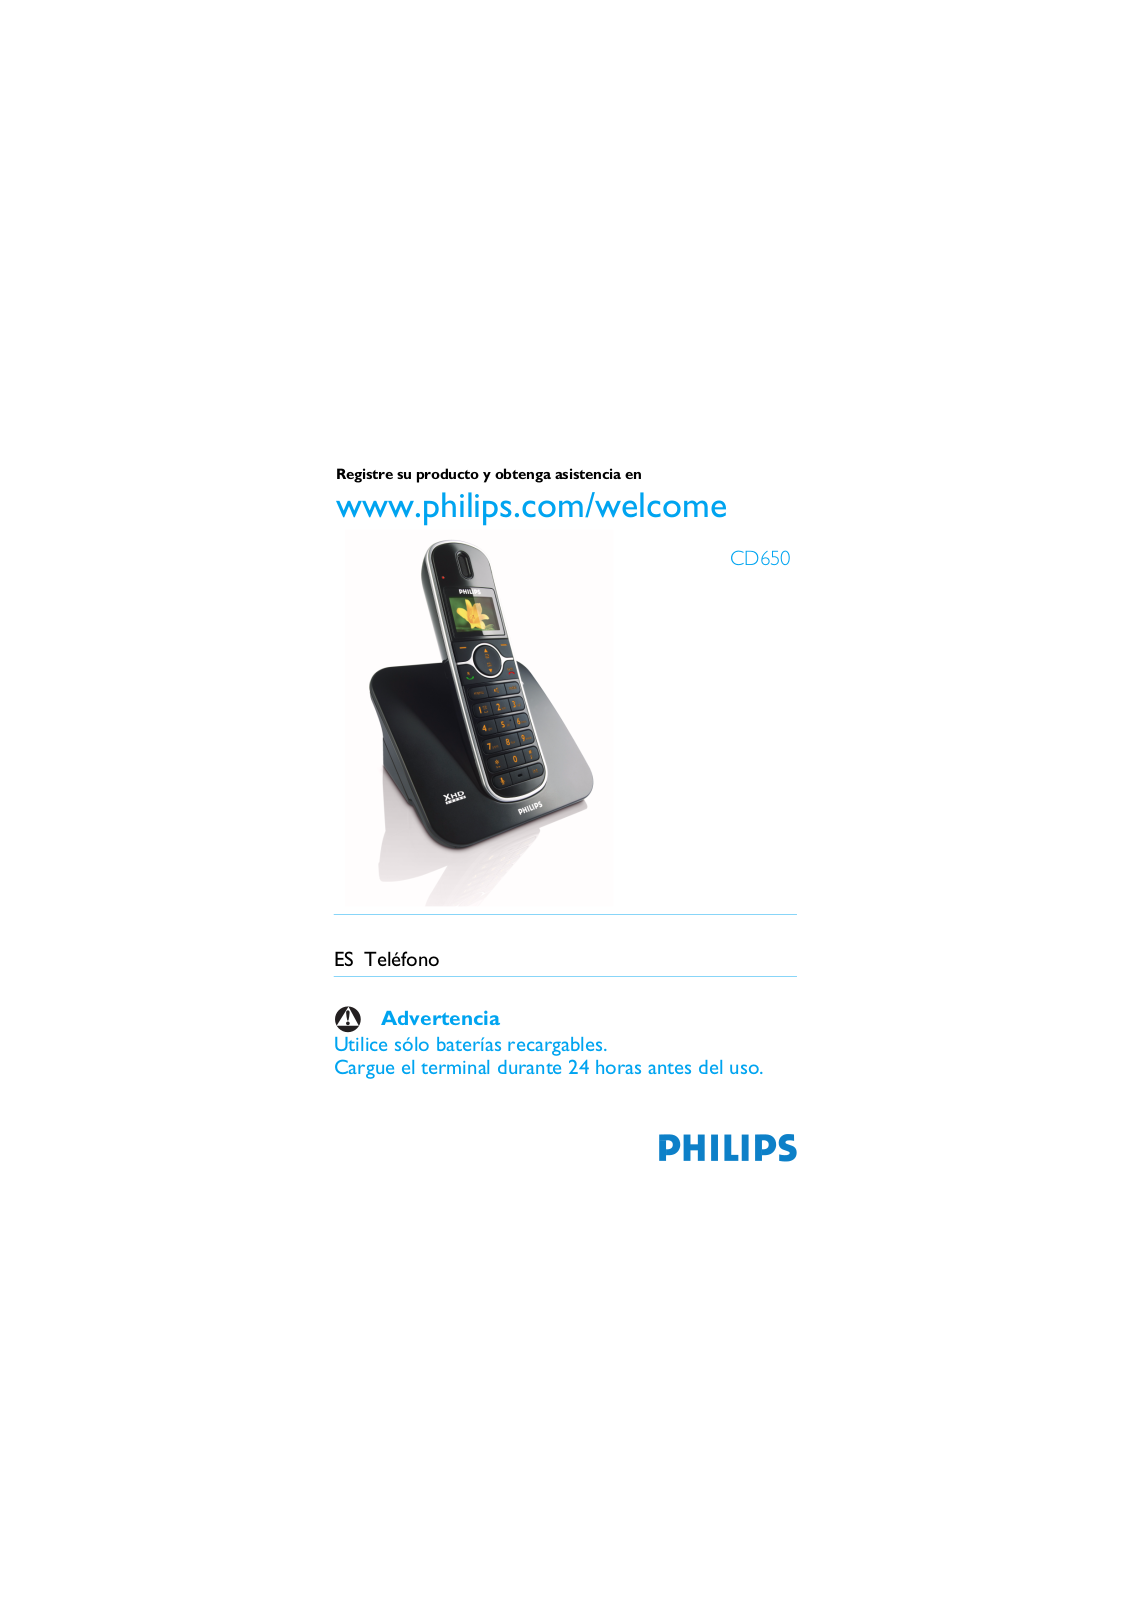 Philips CD650 User Manual